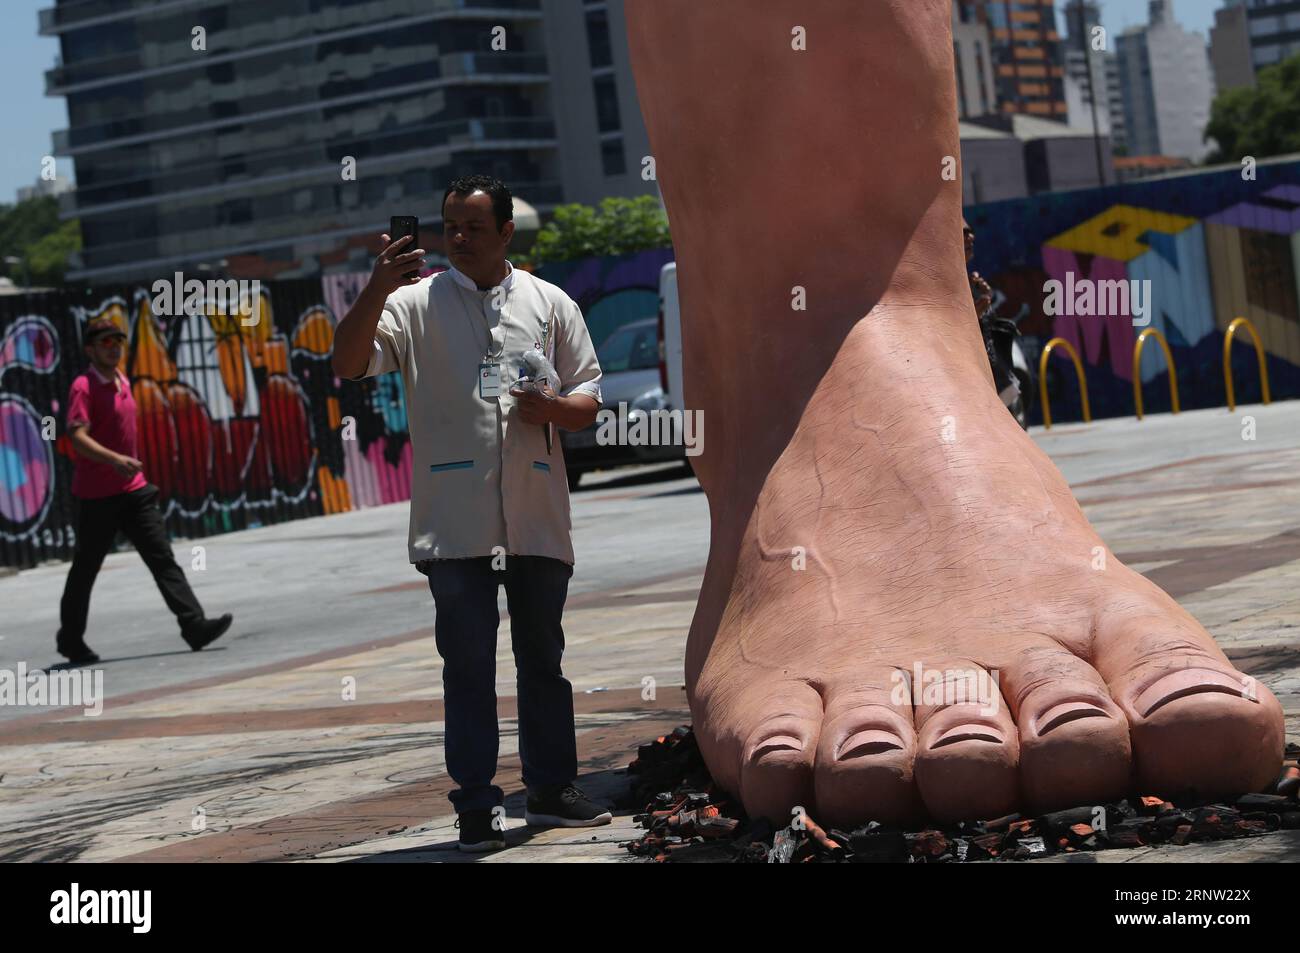 (171130) -- SAN PAOLO, 30 novembre 2017 -- Un uomo si trova di fronte a una scultura di un piede gigante che calpesta i carboni caldi, dell'artista brasiliano Eduardo Srur, a San Paolo, Brasile, il 29 novembre 2017. La scultura ha l'obiettivo di creare consapevolezza sulla polineuropatia amiloide familiare, una malattia neurologica in cui uno dei possibili sintomi è la ridotta capacità di sentire la temperatura. (Da) (fnc) (zxj) BRAZIL-SAO PAULO-HEALTH-SCULPTURE RahelxPatrasso PUBLICATIONxNOTxINxCHN Foto Stock